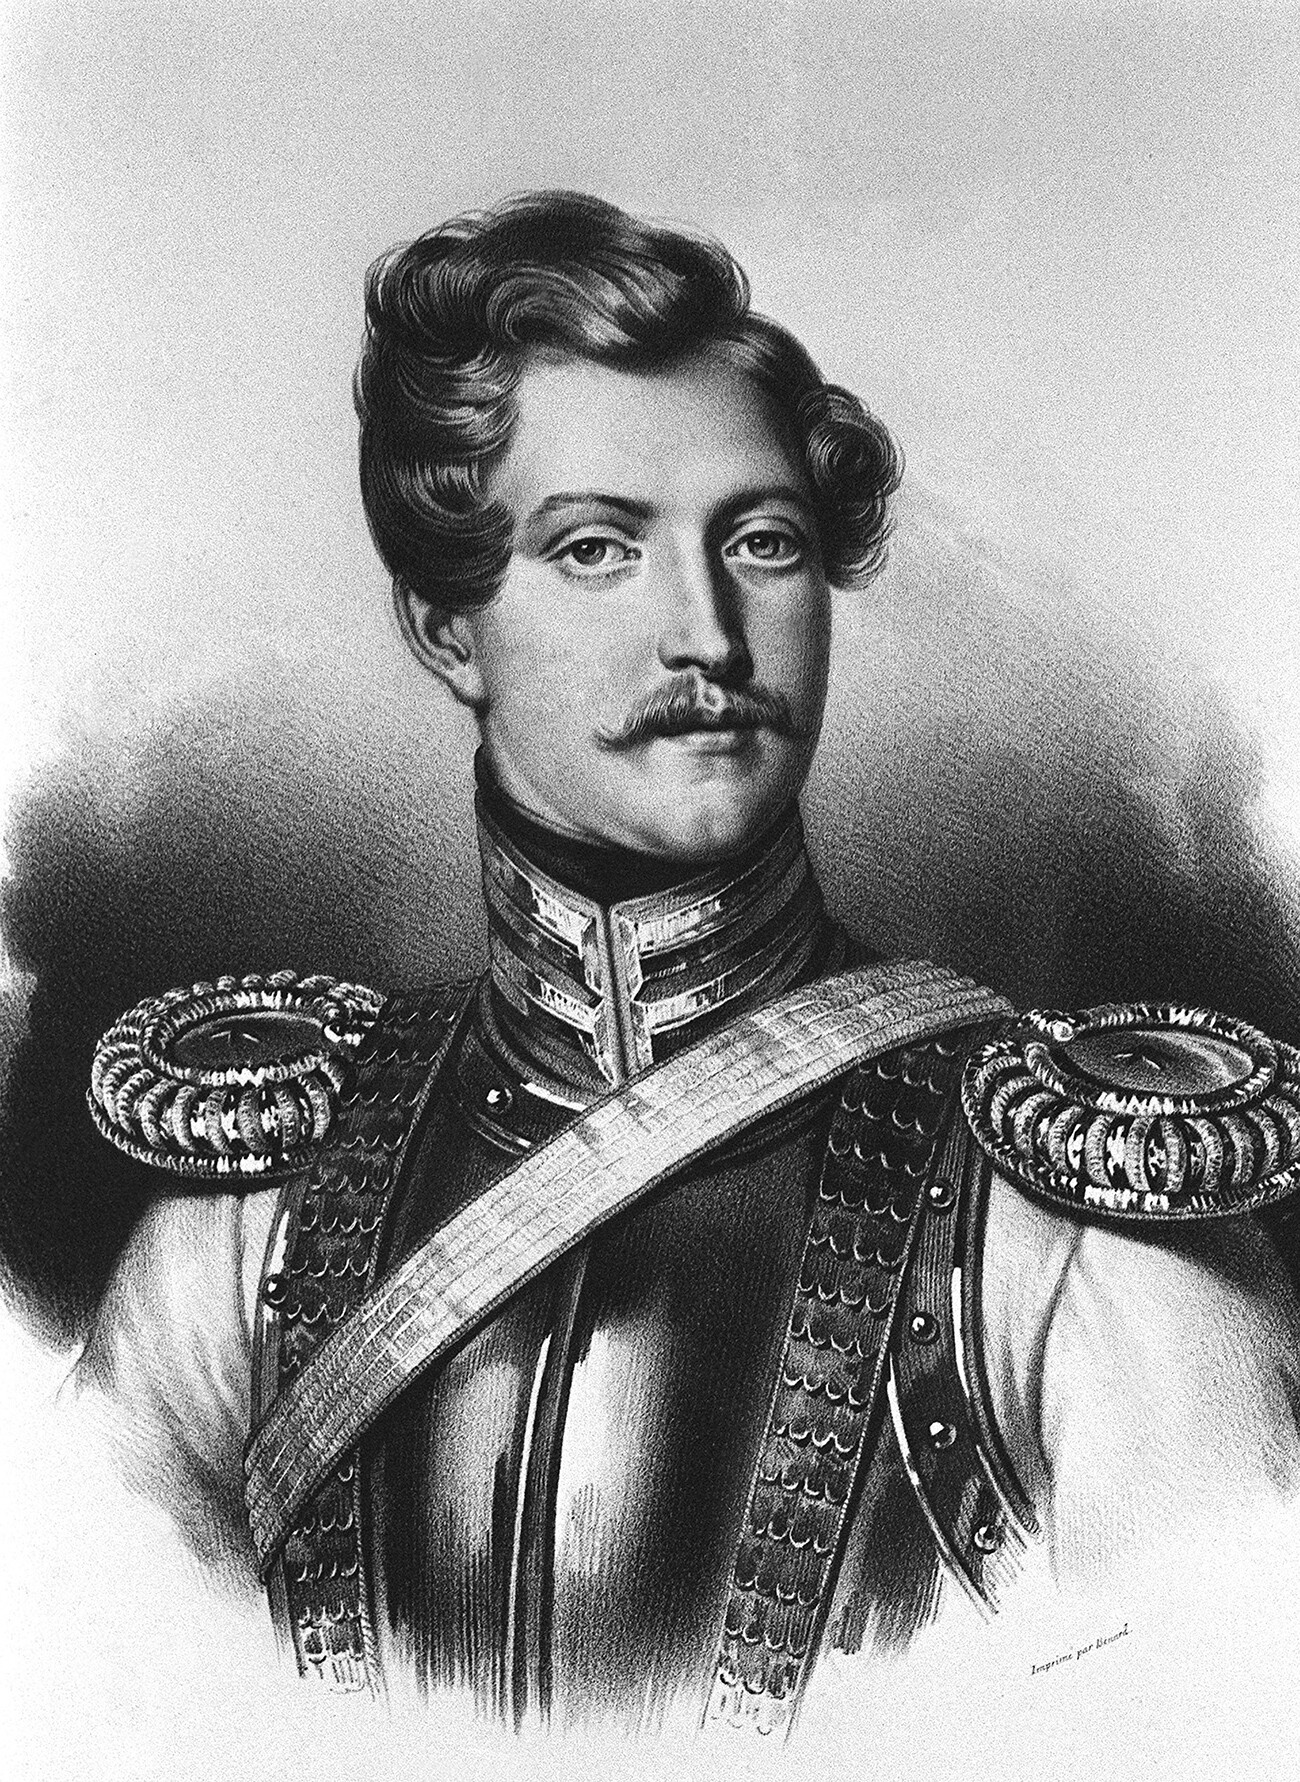 D'Anthès foi responsável pela morte de Púchkin.